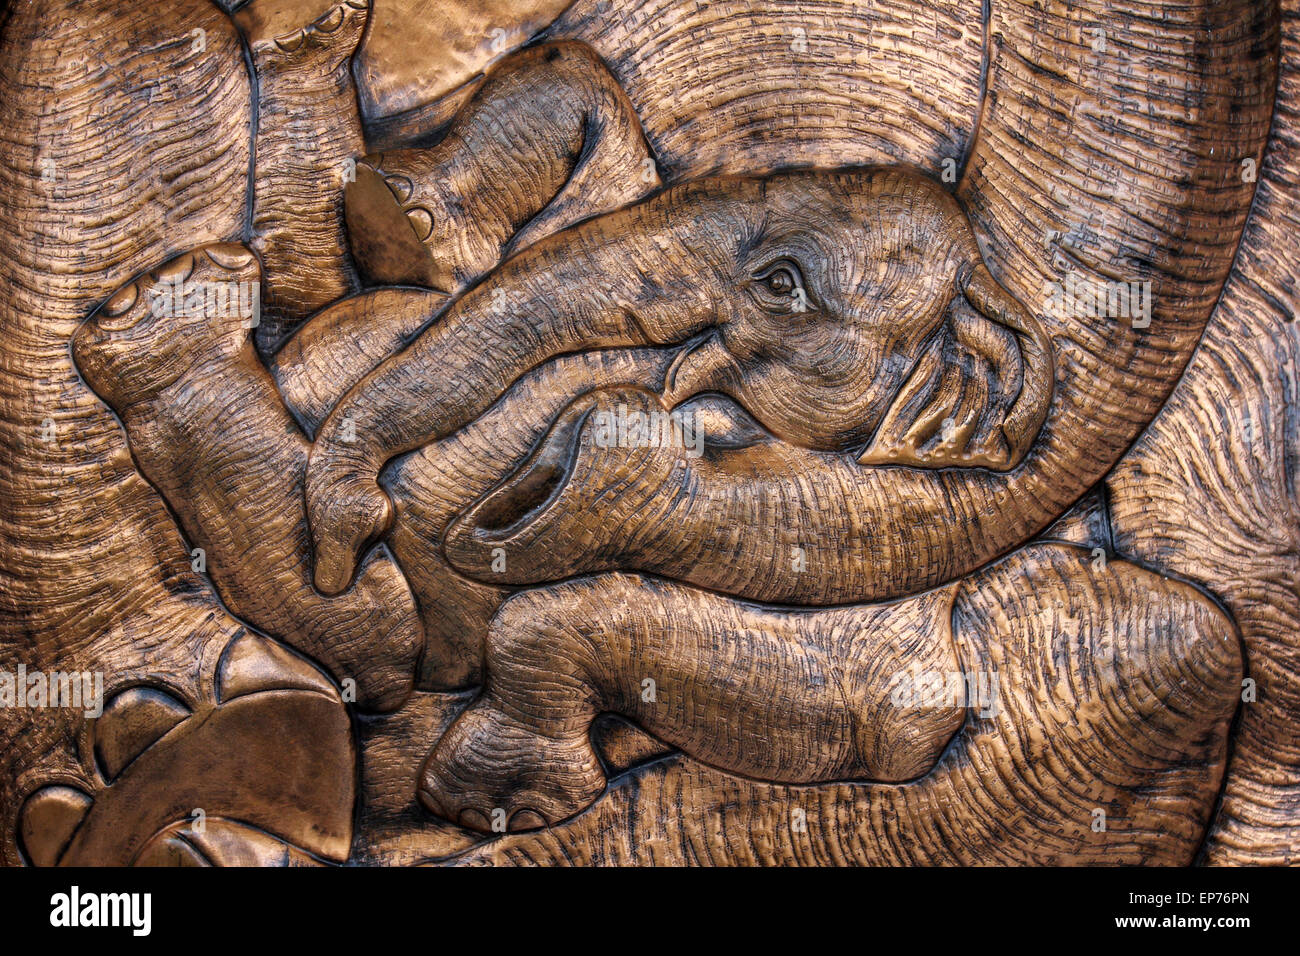 Metalwork Baby Elephant Stock Photo